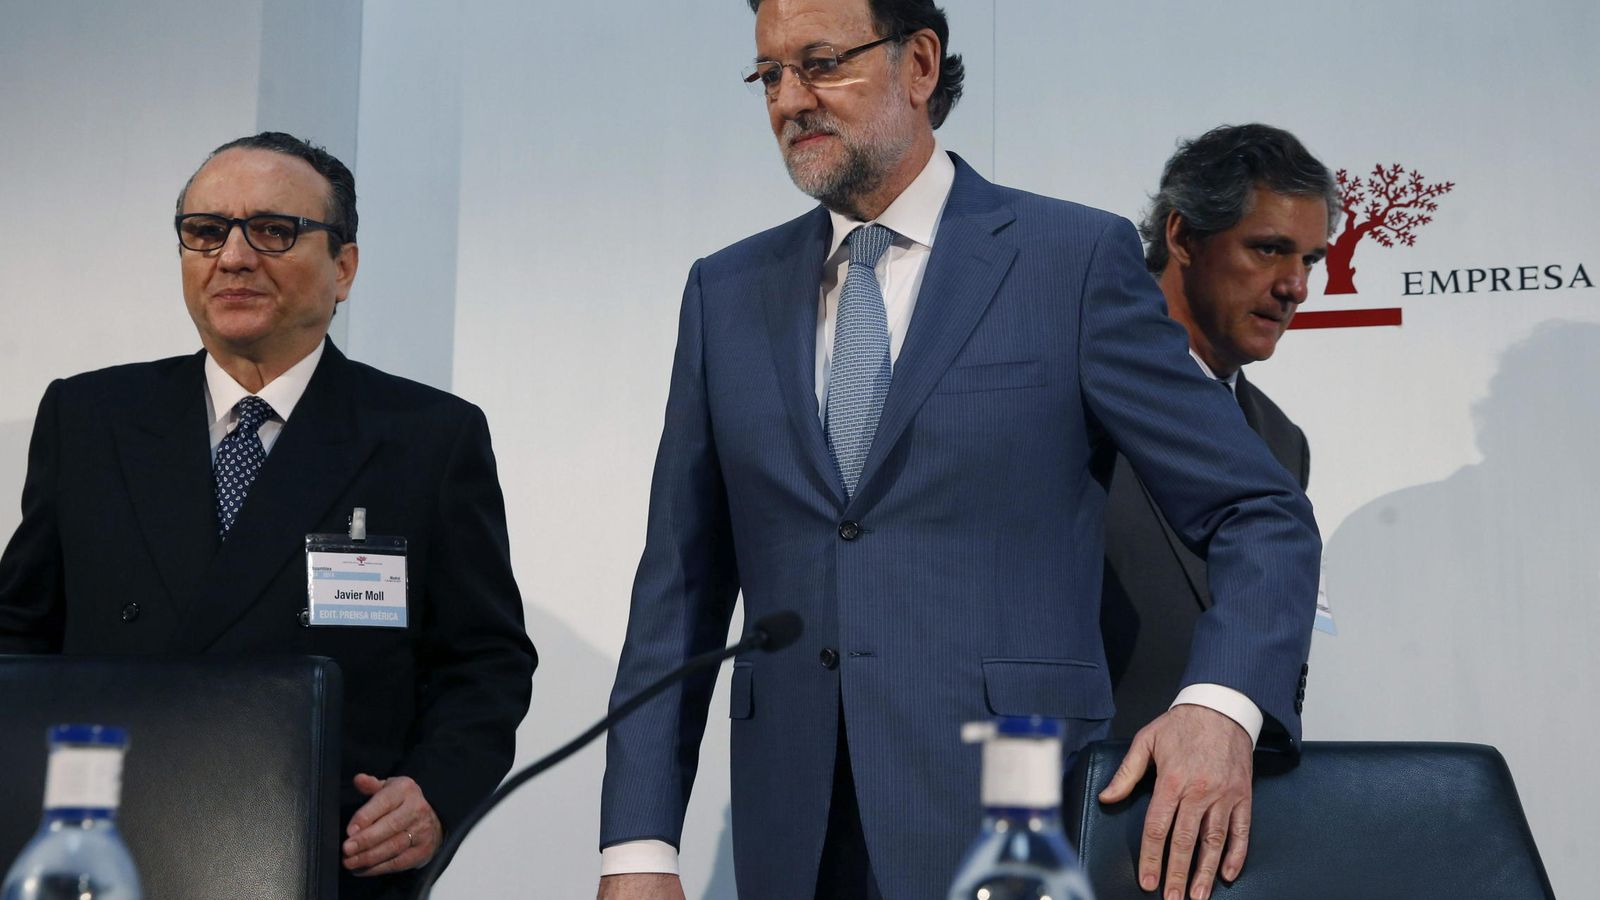 Foto: Javier Moll, presidente del Instituto de Empresa Familiar, junto a Mariano Rajoy. (EFE)